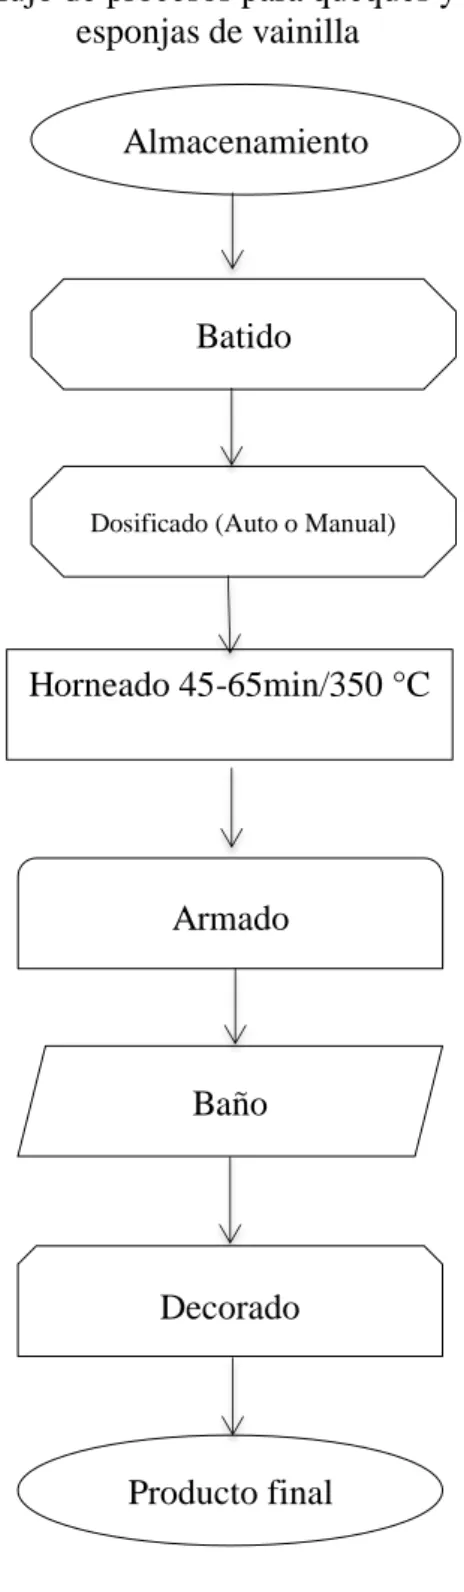 Figura 1. Familiarización de flujo de proceso Almacenamiento 